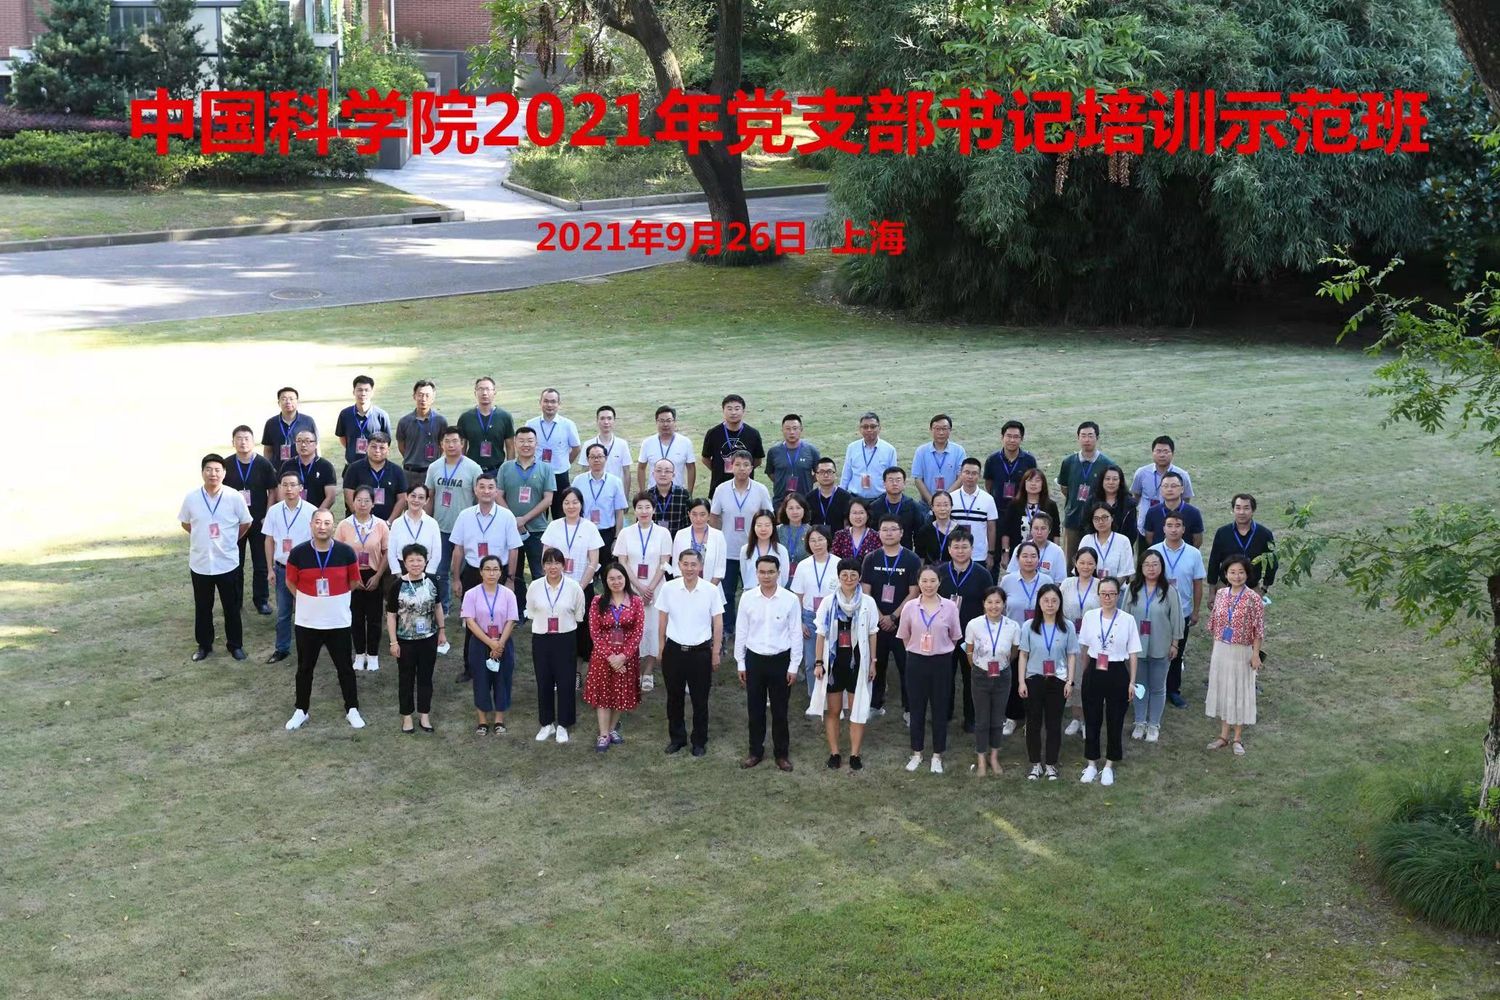 20210926党支部书记示范班01上海培训点开班合影上海分校工作人员拍摄